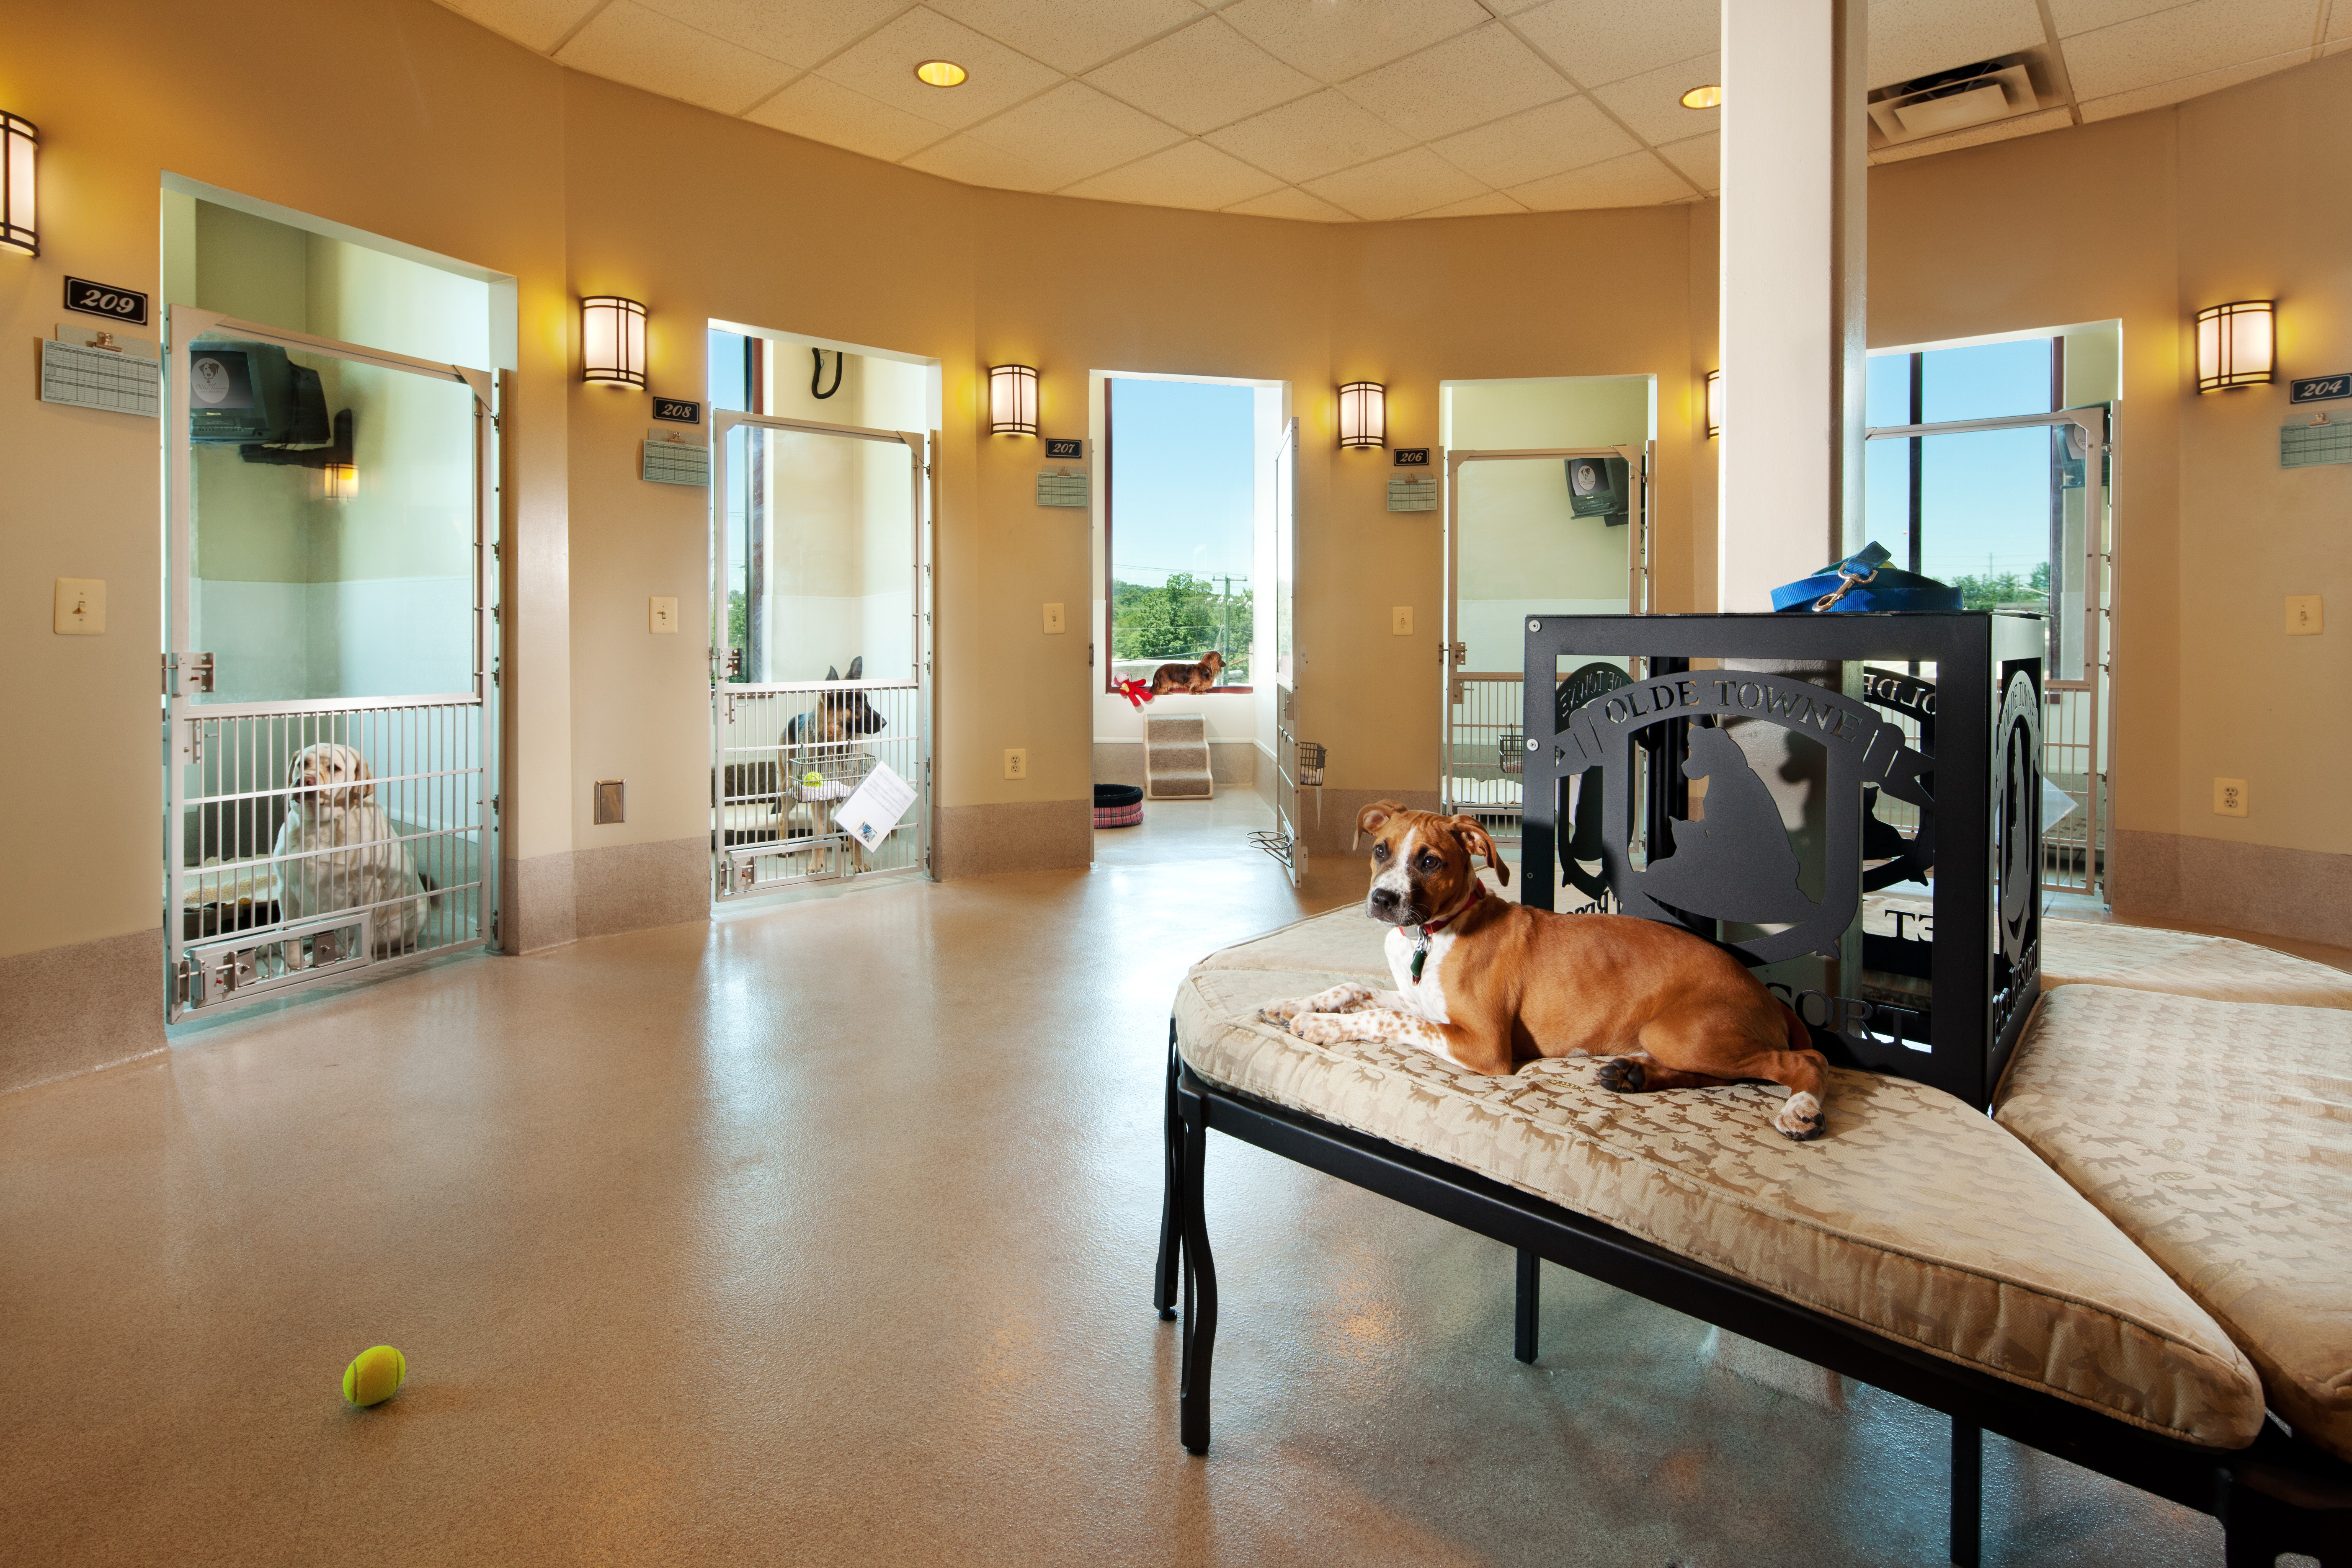 The petting room. Сэр пес гостиница для собак. Обушково гостиница для собак. Отель для животных. Интерьер приюта для животных.